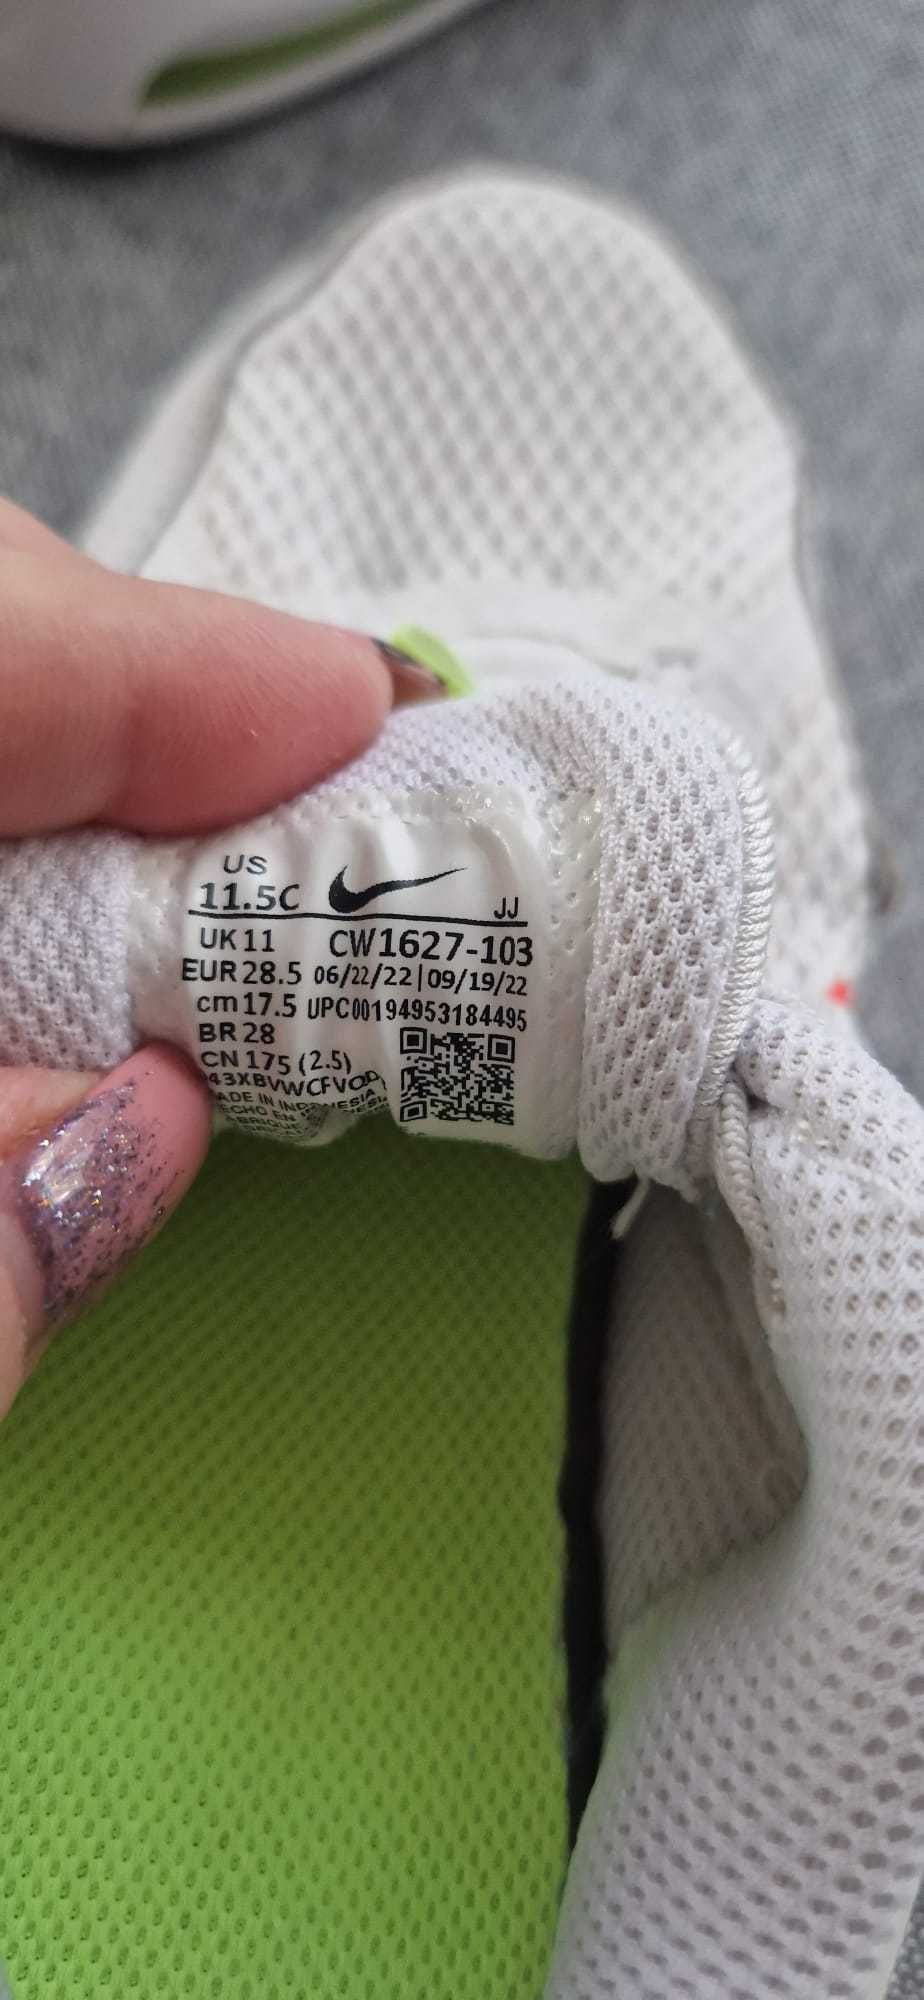 Nike Air Max Bolt copii